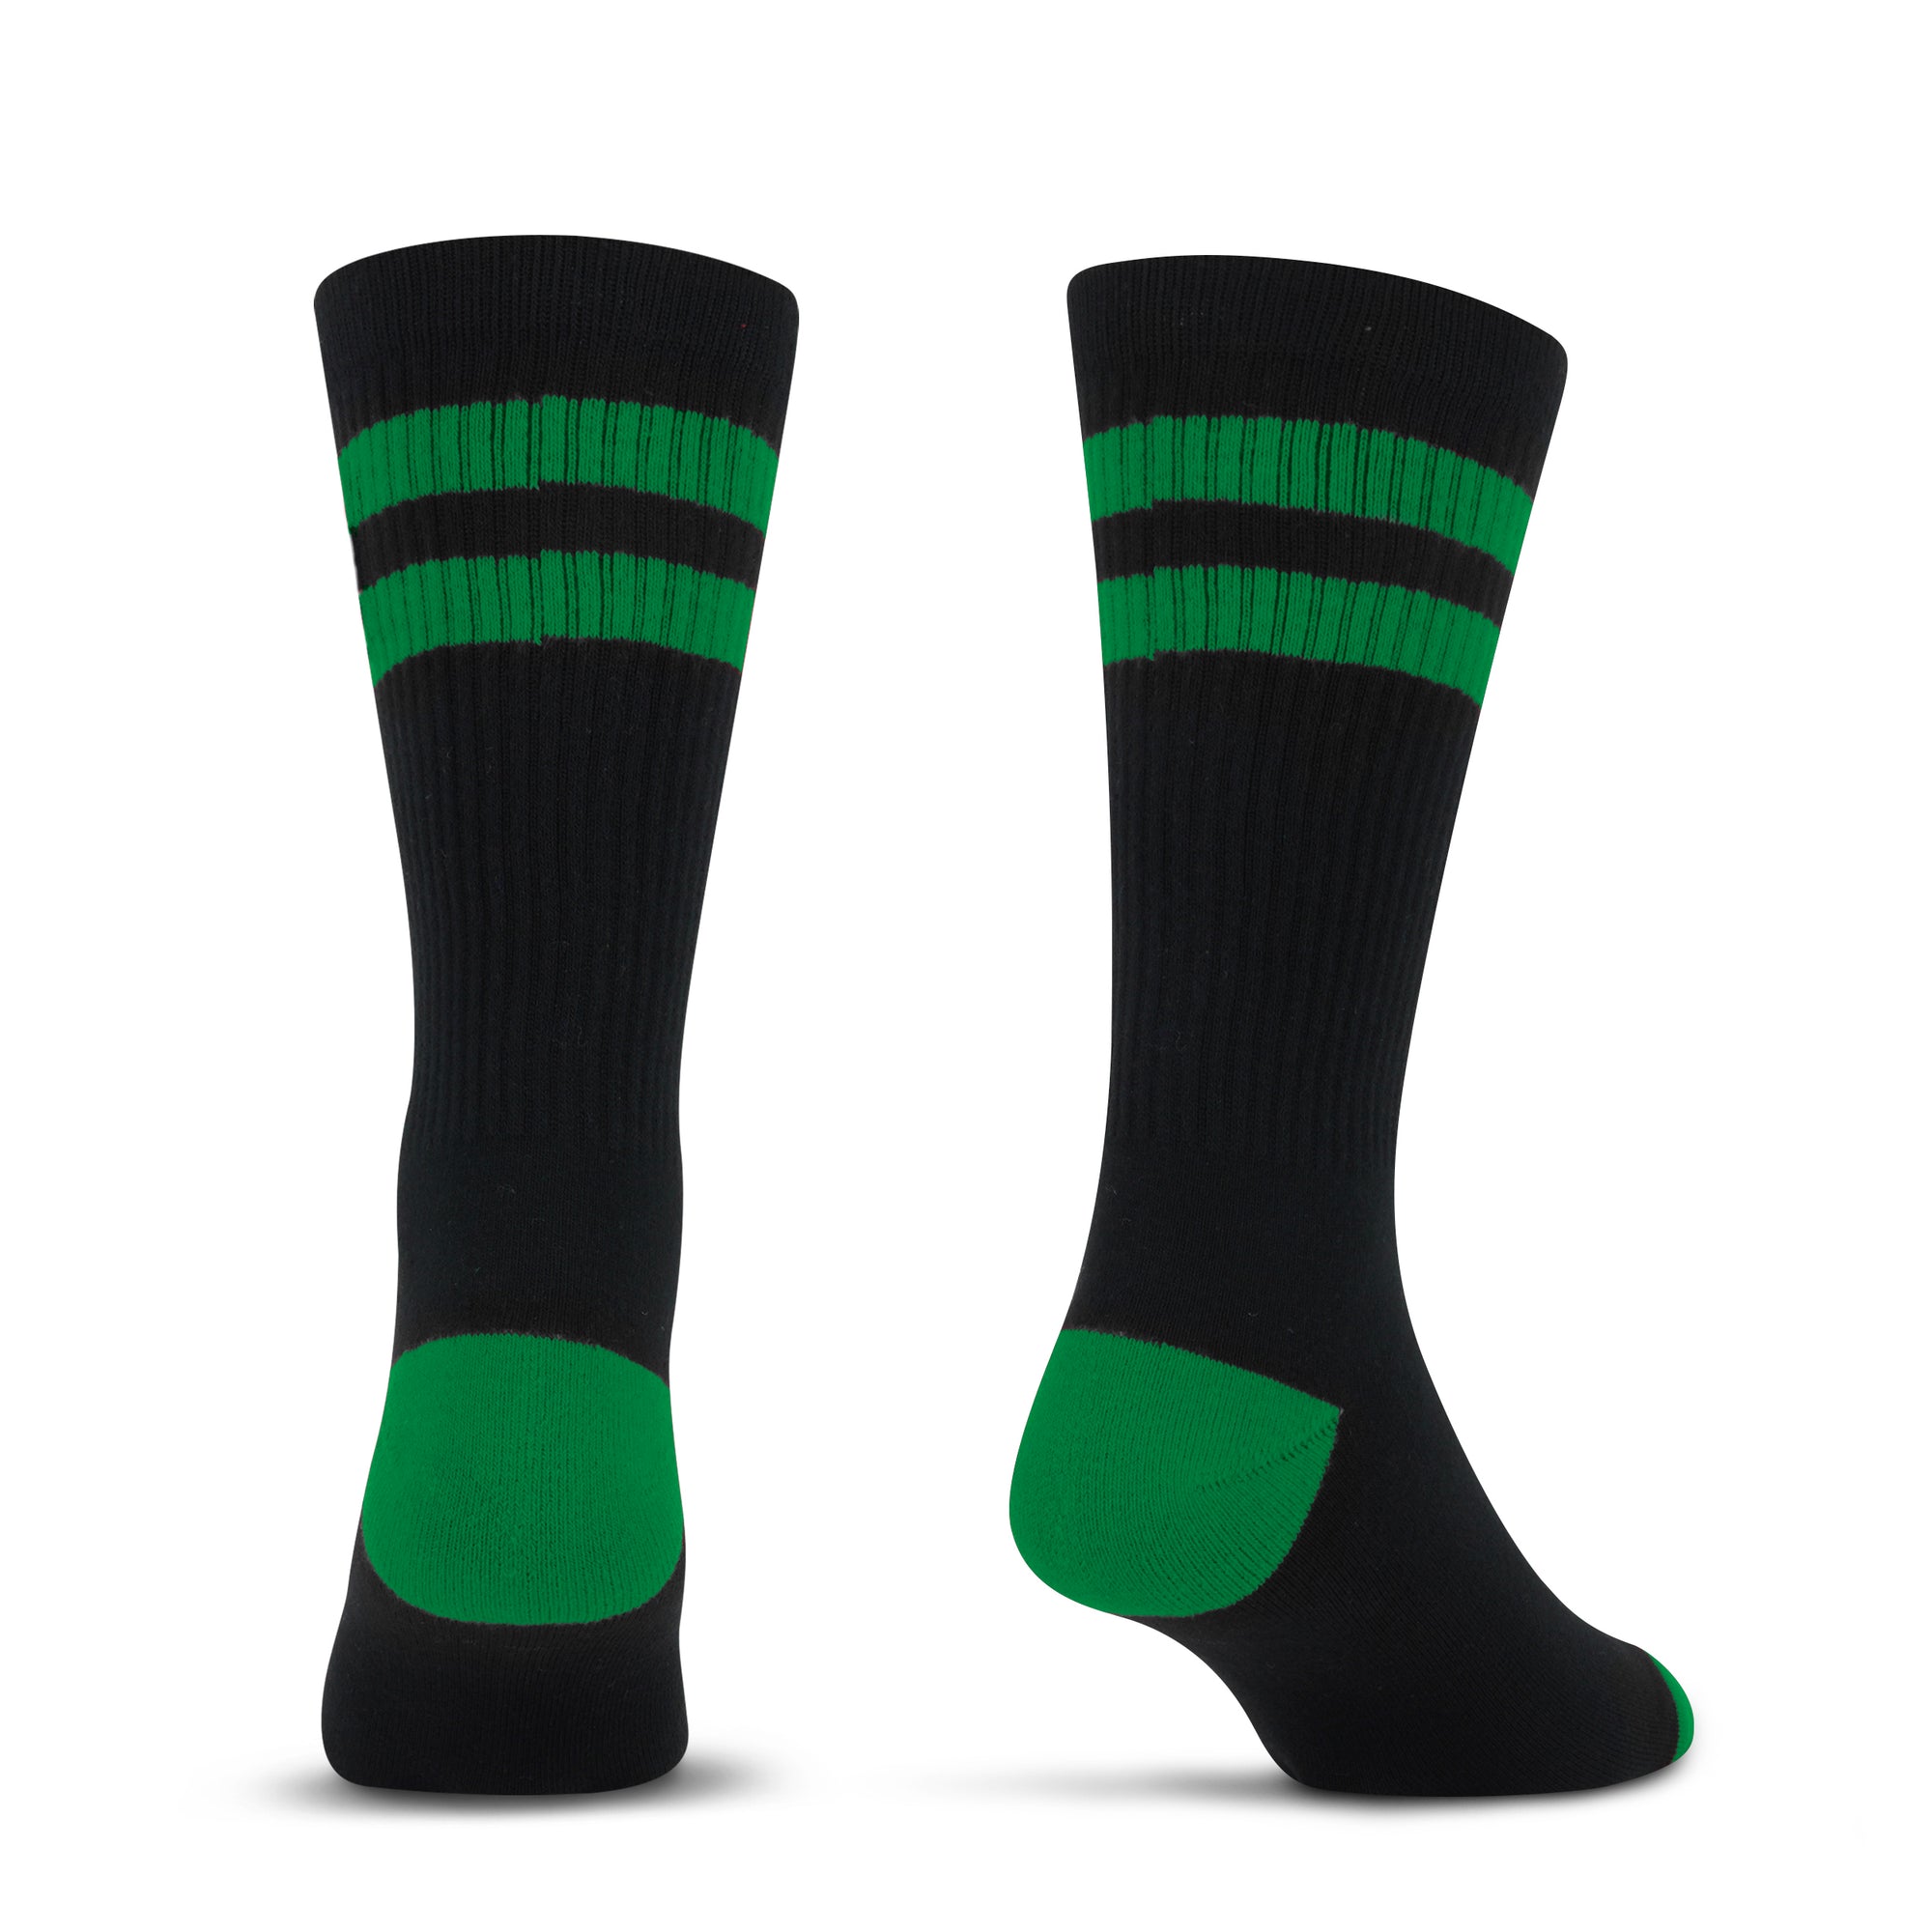 NBA Logoman 2 Stripe - Green